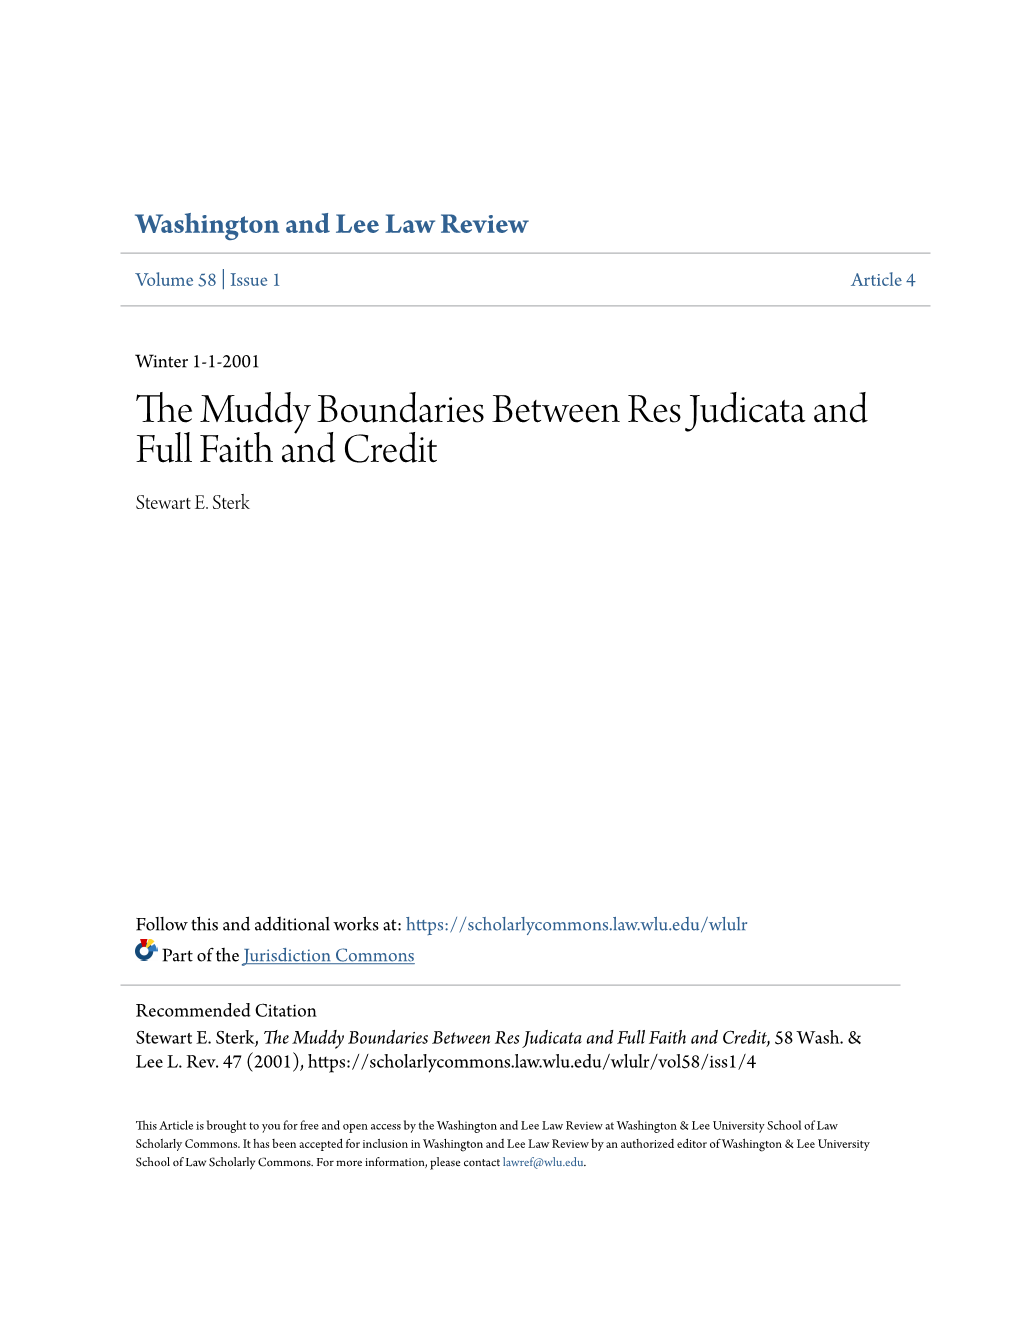 The Muddy Boundaries Between Res Judicata and Full Faith and Credit, 58 Wash